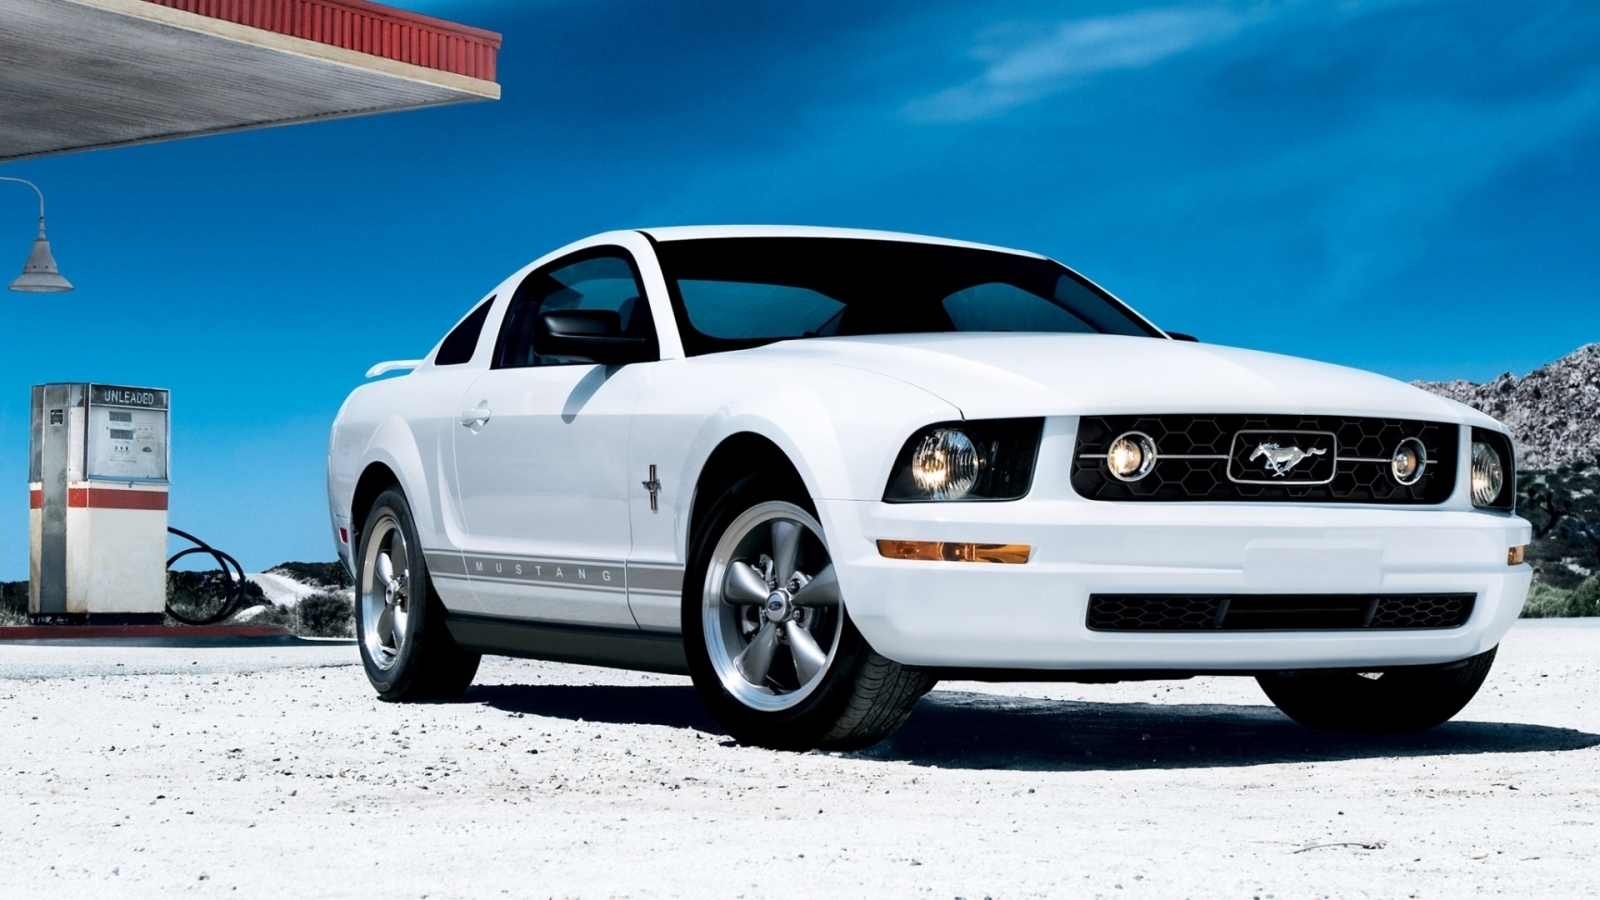 White Mustang for 1600 x 900 HDTV resolution